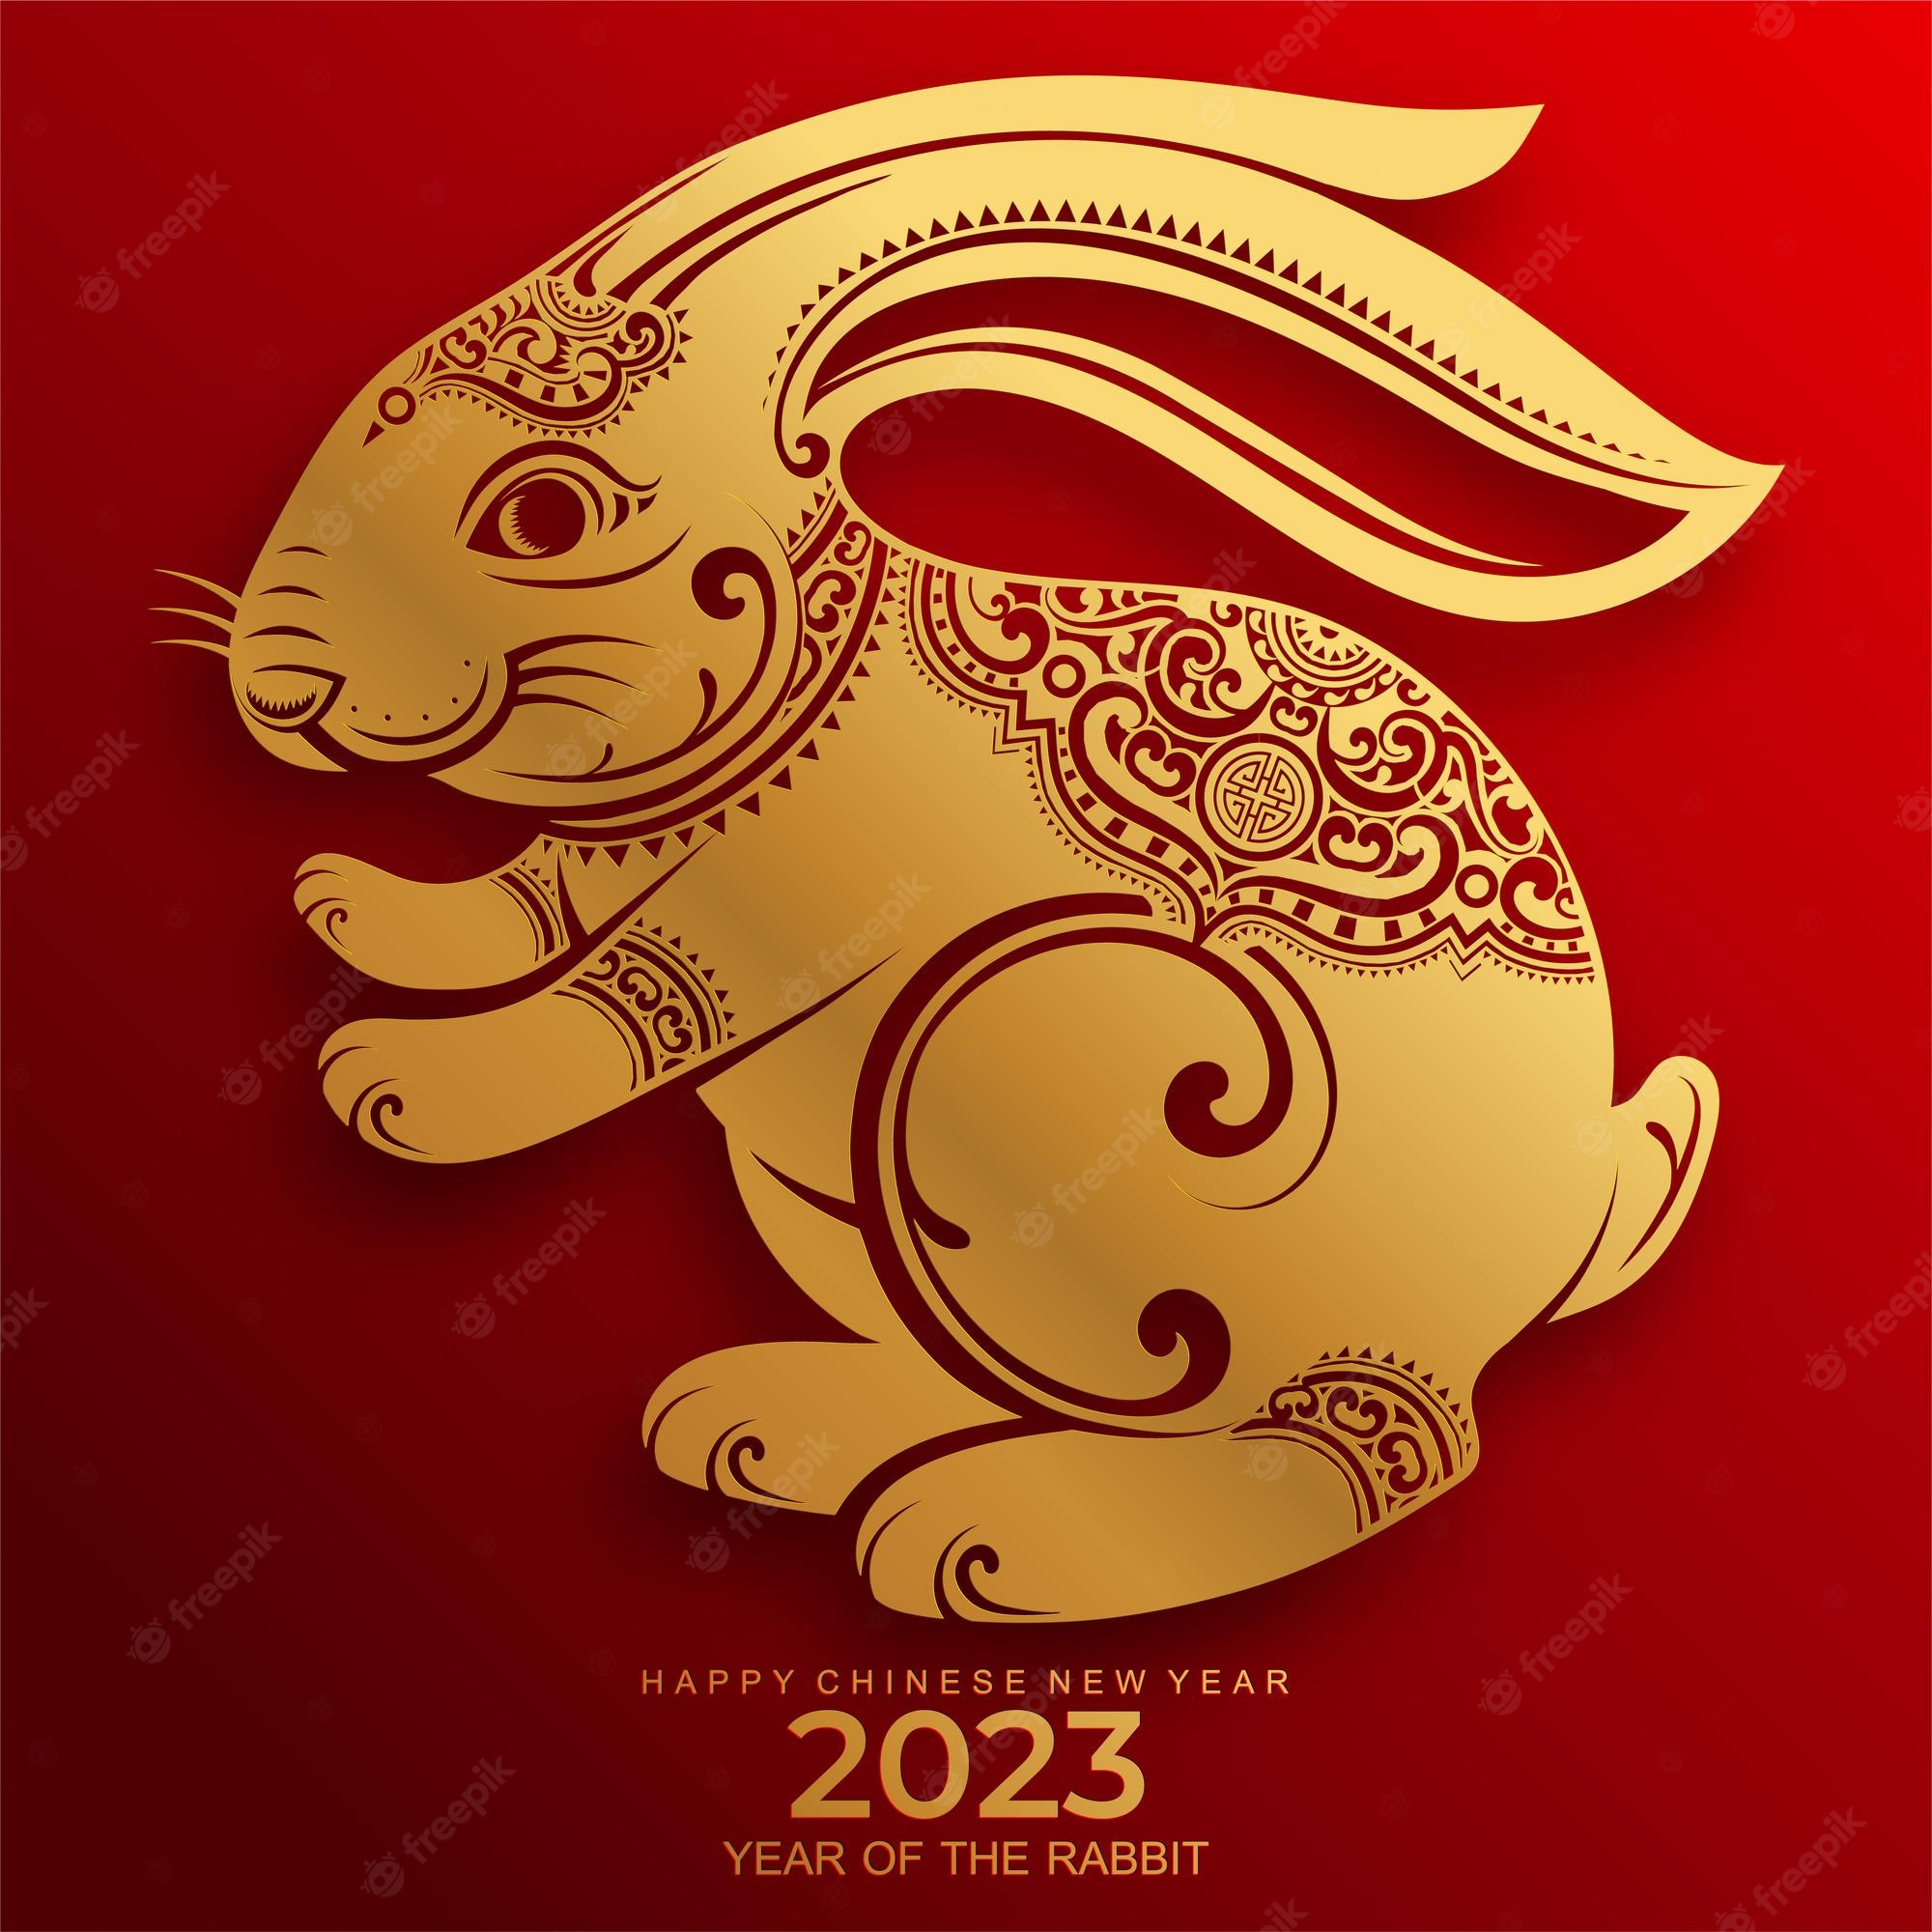 Premium Vector. Happy chinese new year 2023 year of the rabbit zodiac